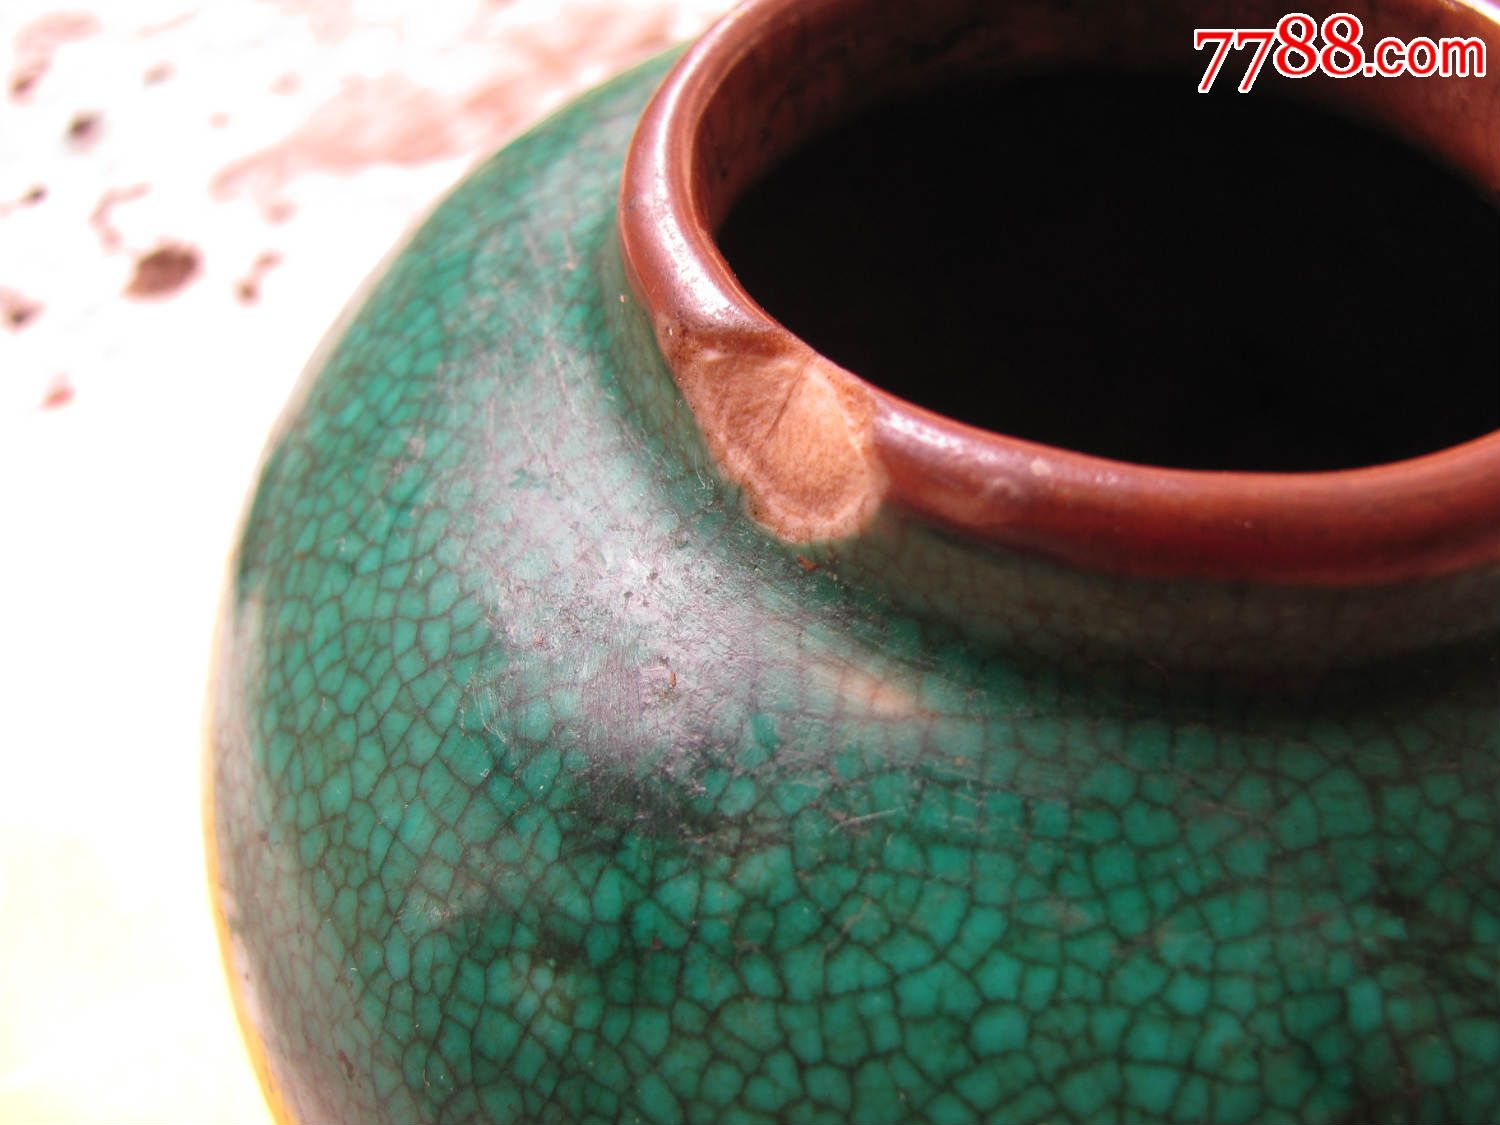 绝对的精品哥瓷绿釉罐一个